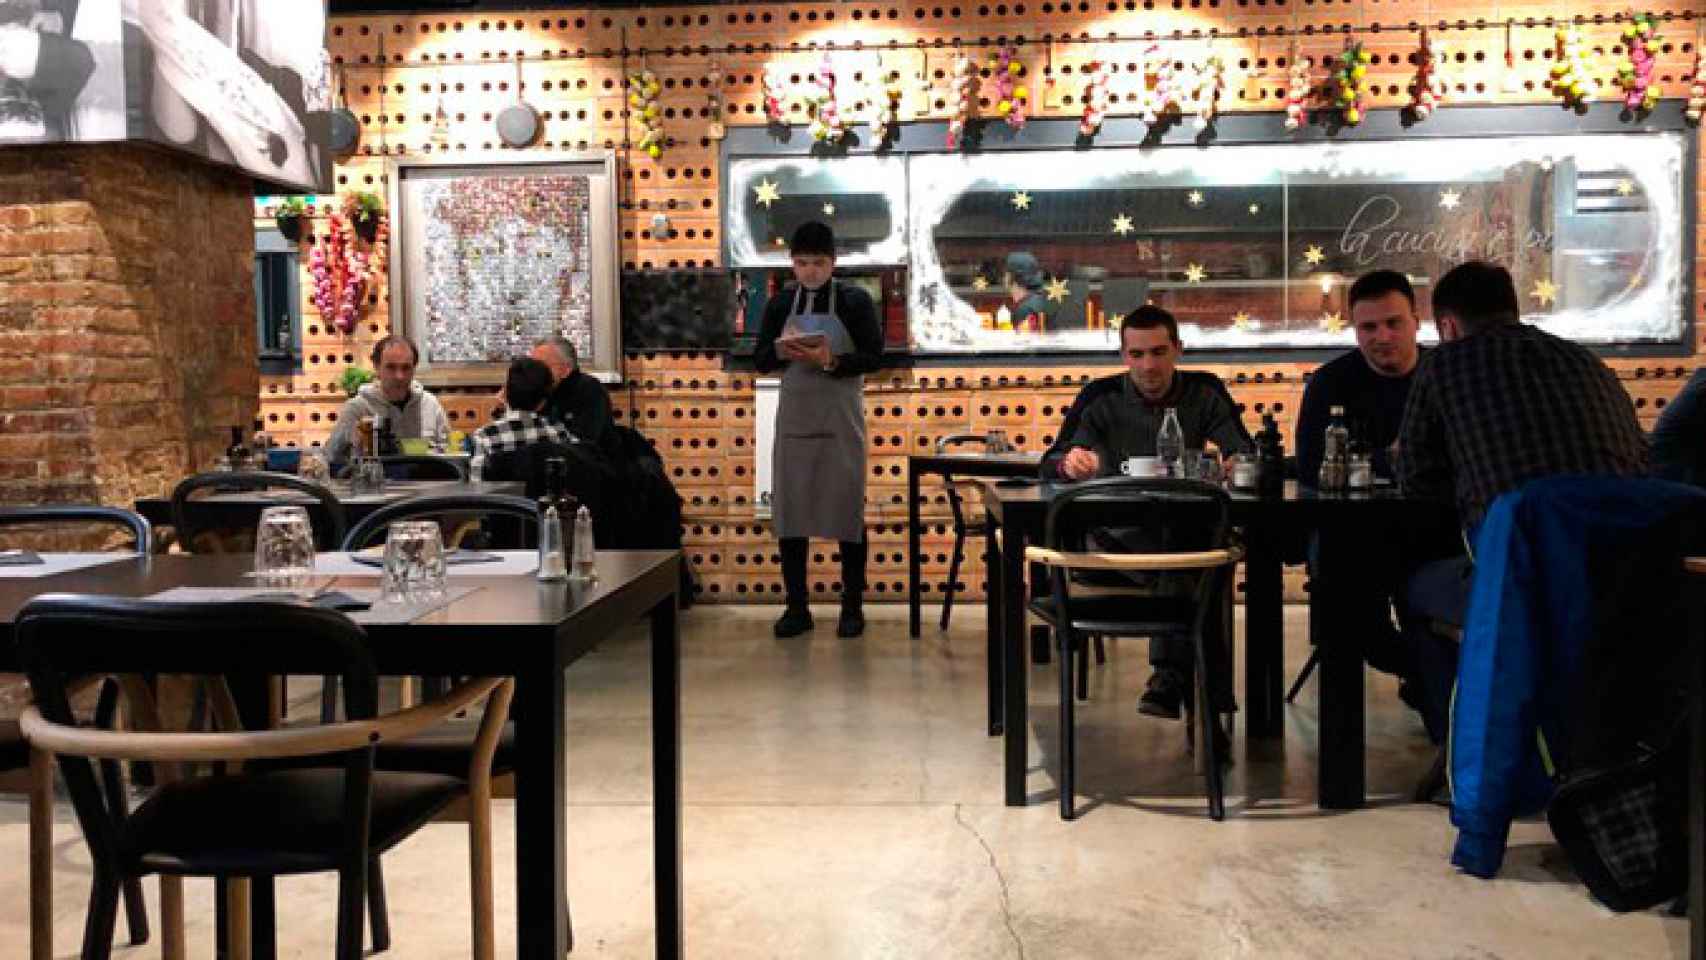 Imágenes del interior del Restaurante Bo di Napoli de Barcelona / CG